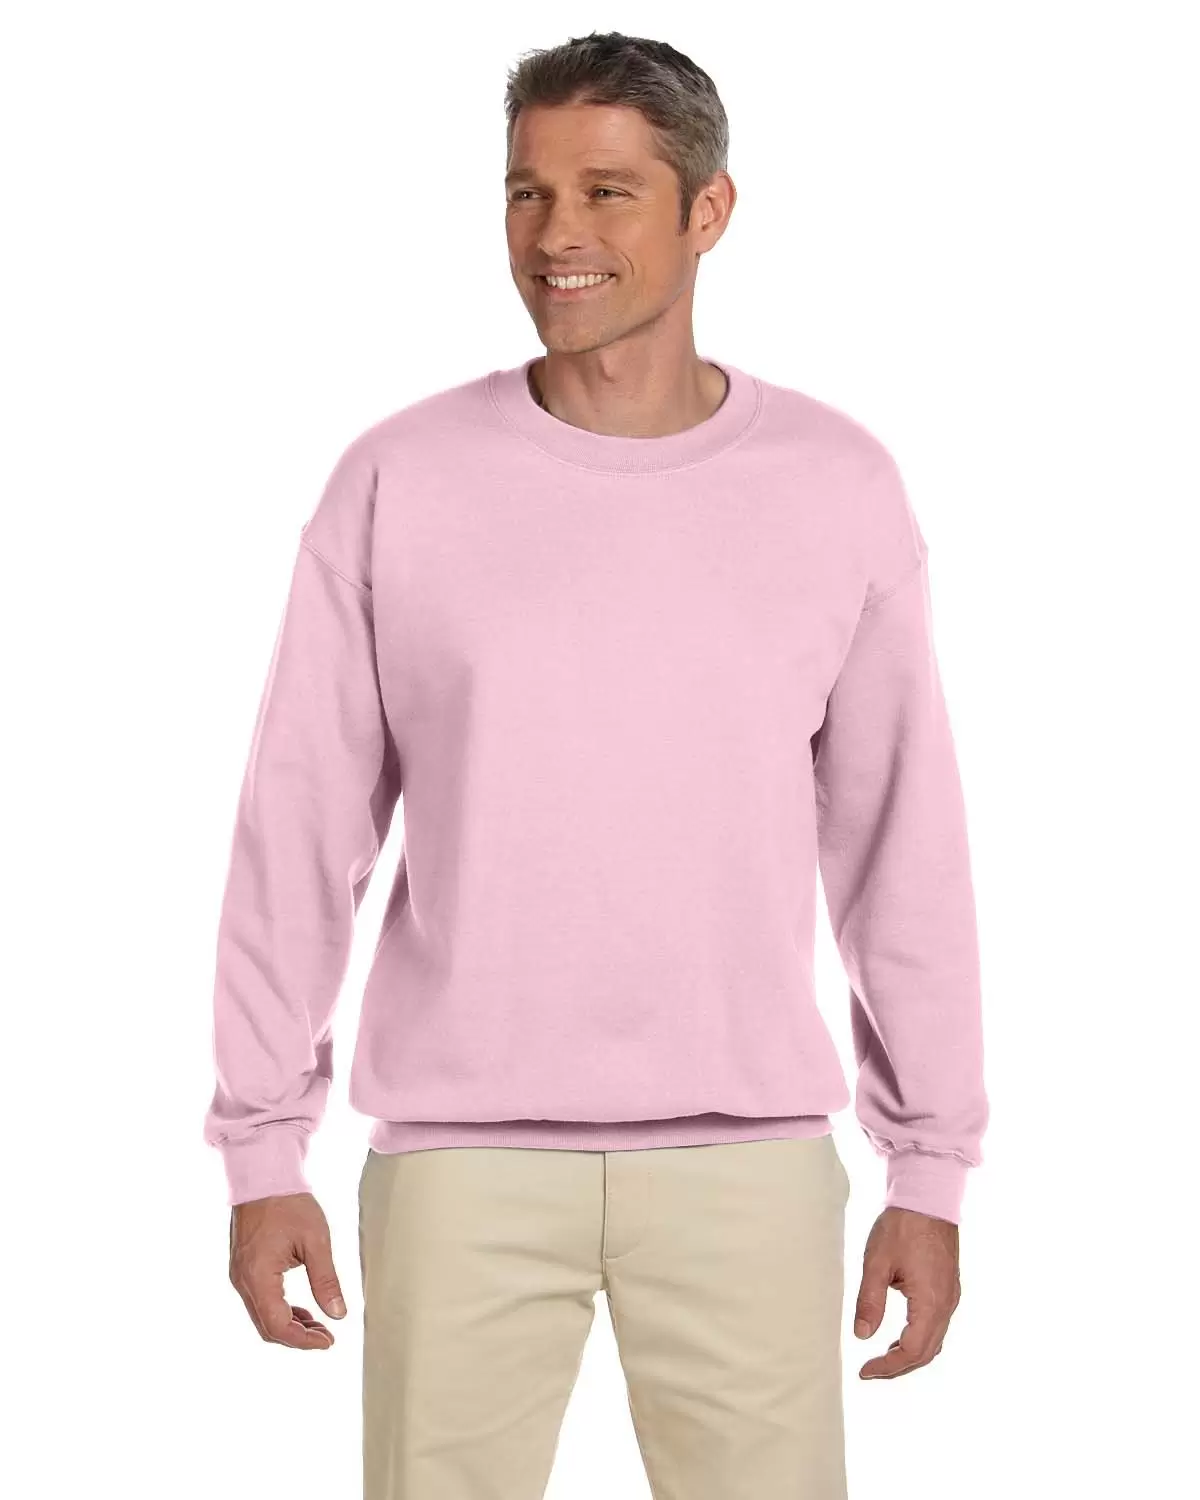 Gildan 18000/G180 Crew Neck Sweatshirt (Wholesale) Light Pink - From $7.52